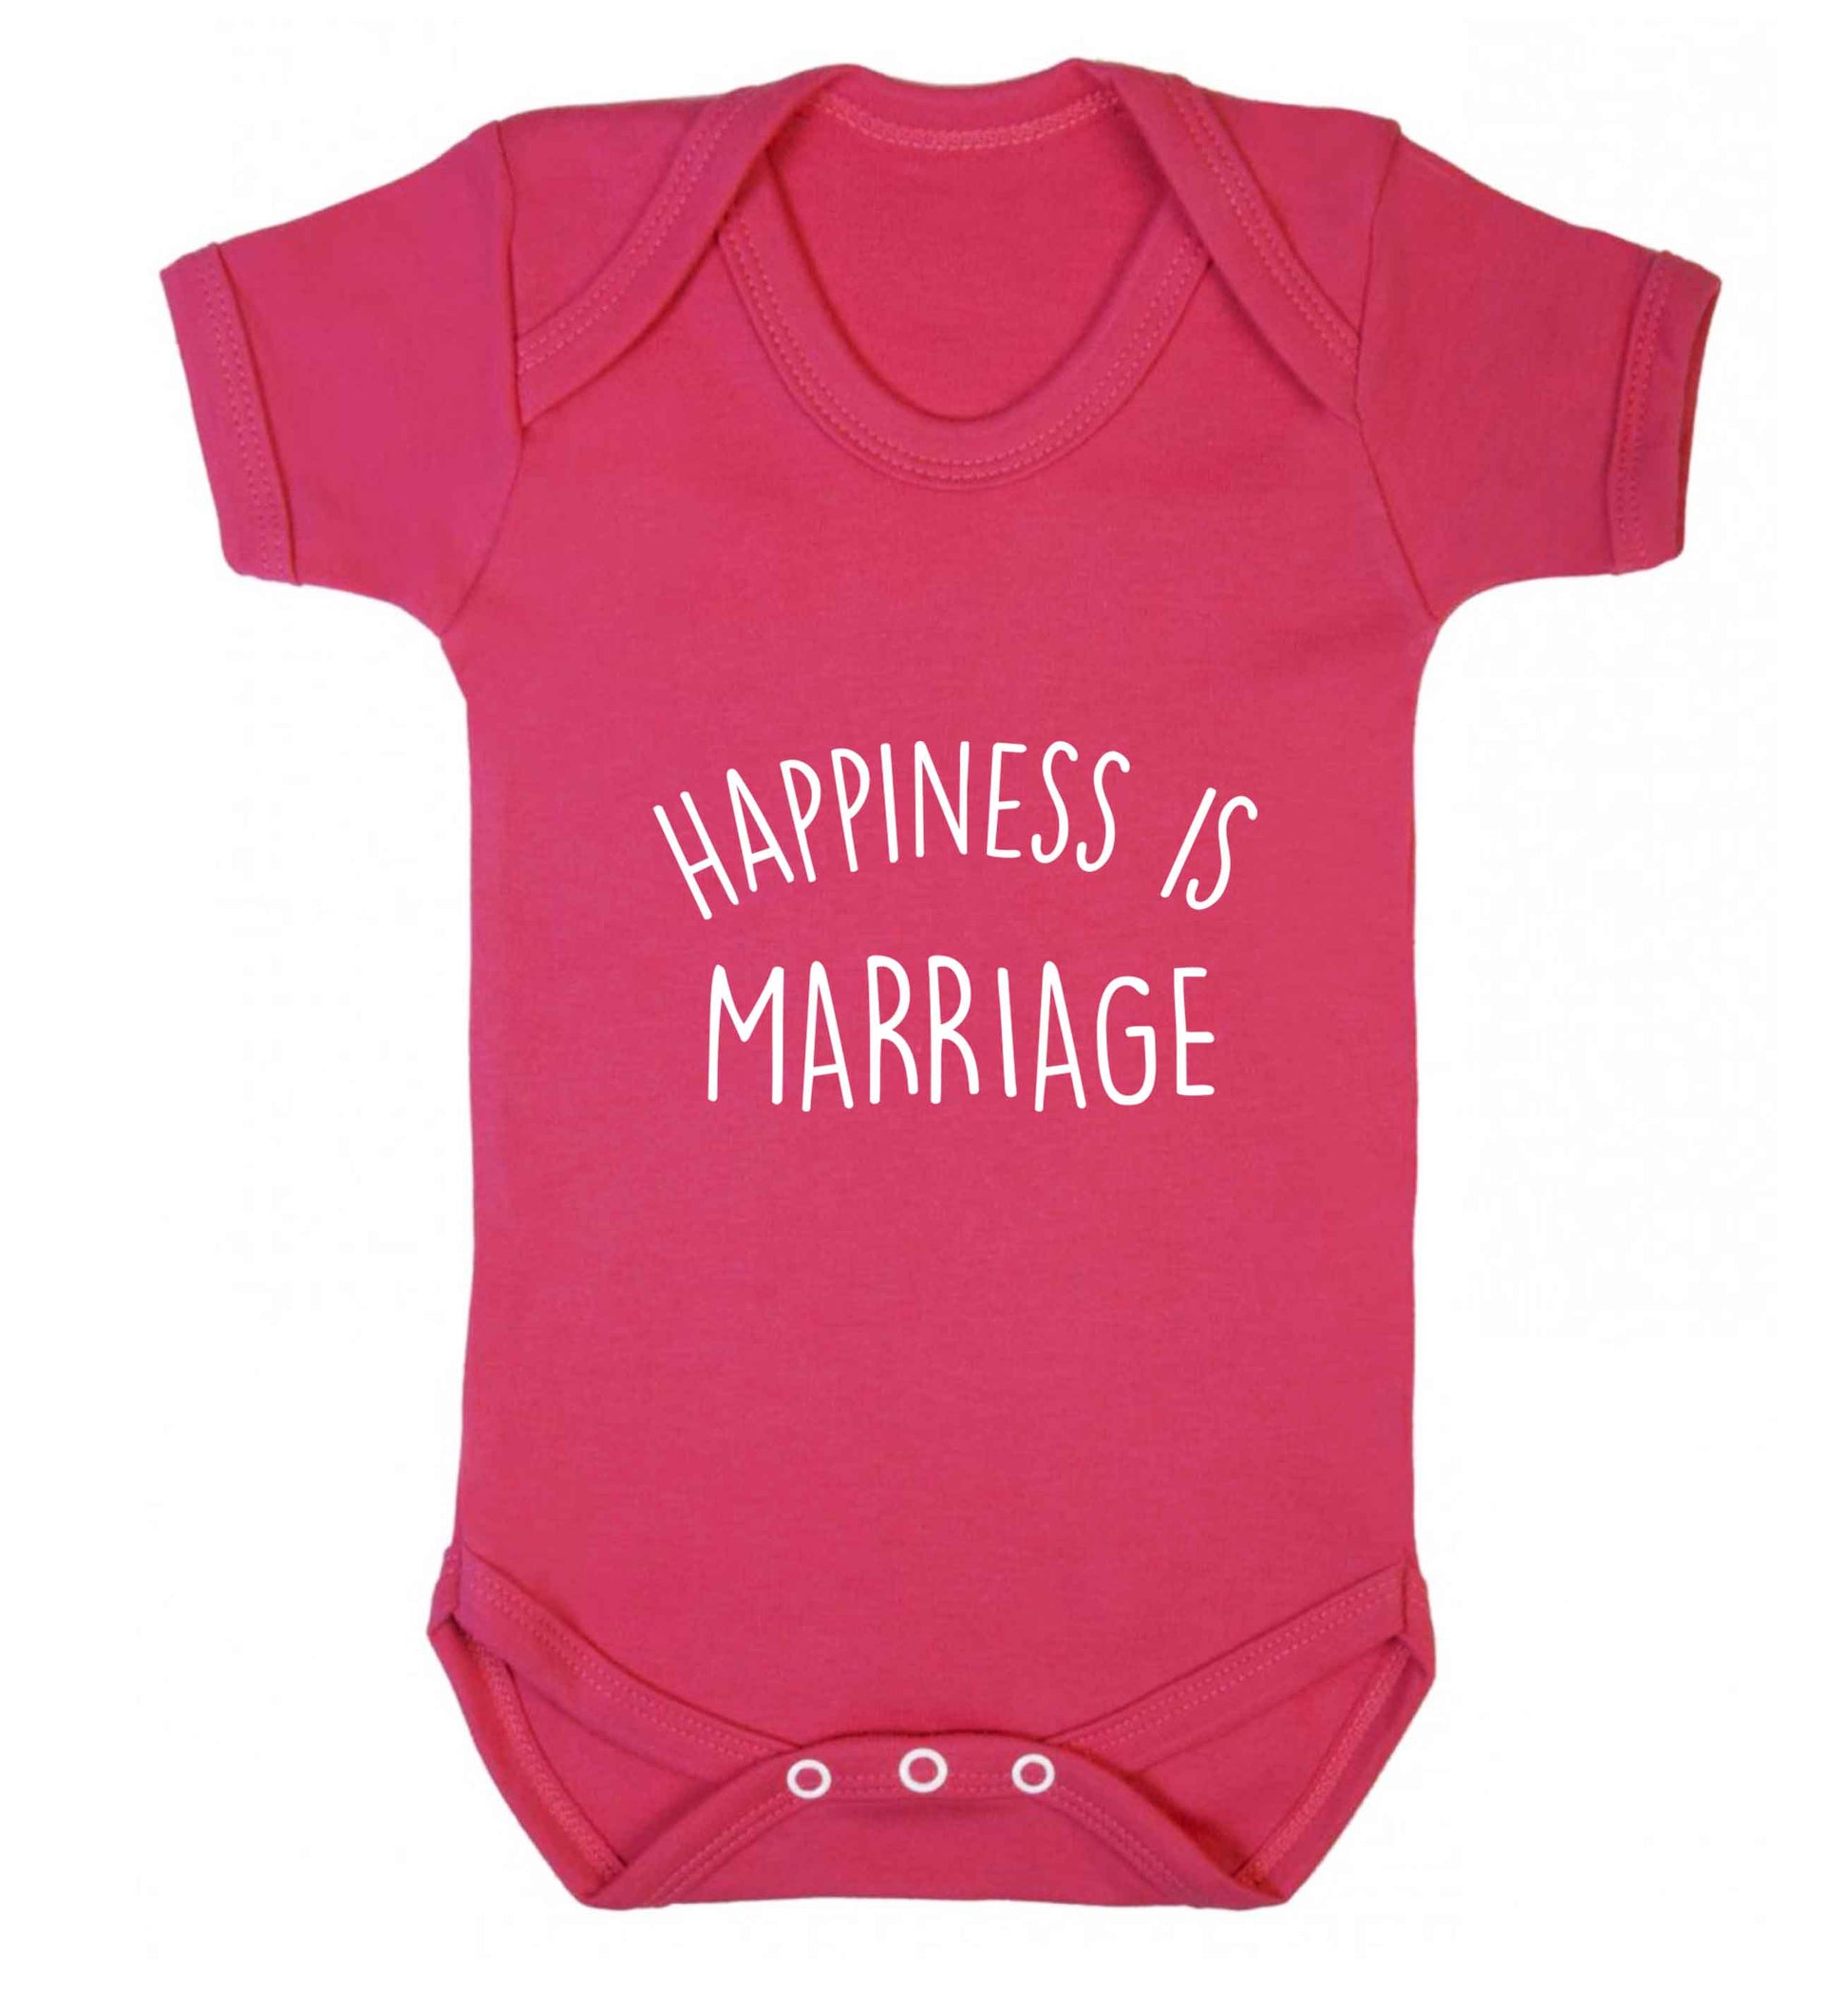 Happiness is wedding planning baby vest dark pink 18-24 months